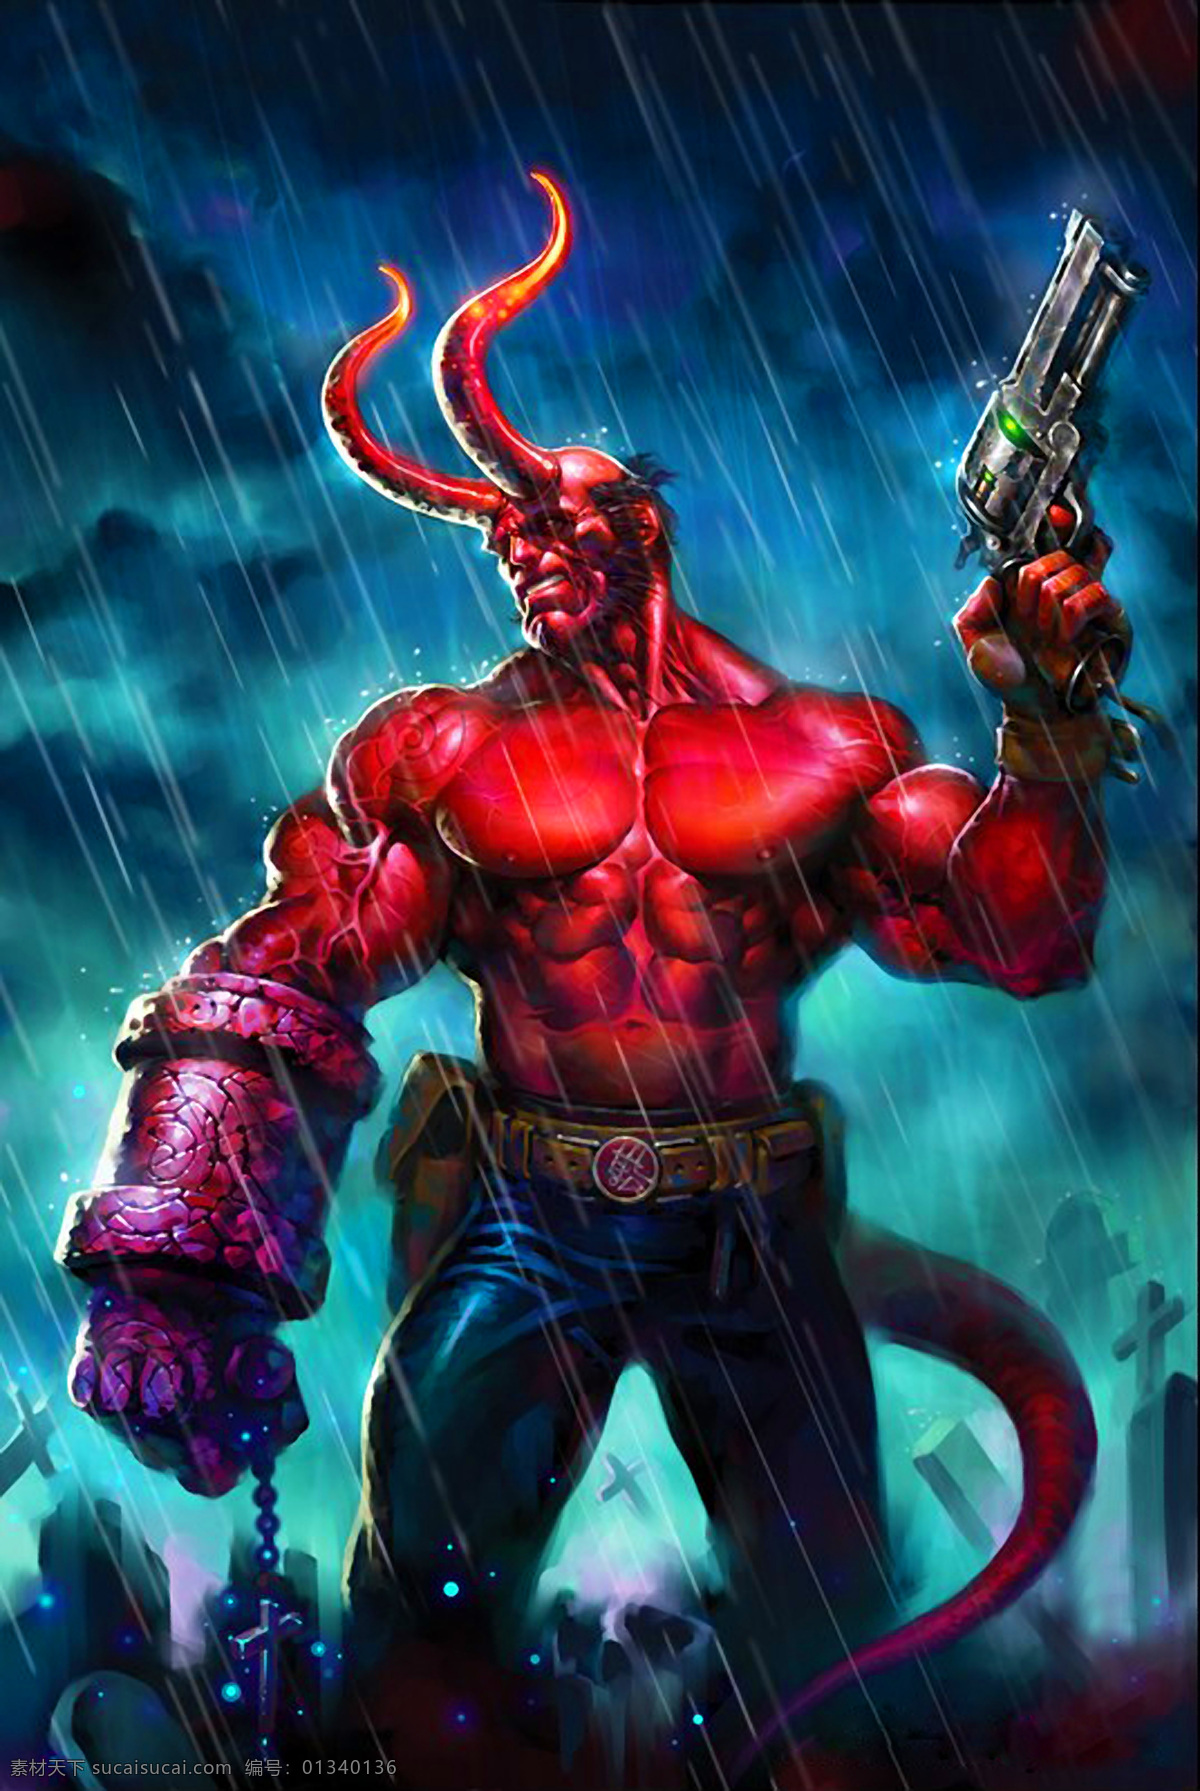 地狱男爵 插图 恐怖 强壮 神秘 电影 地狱 诡异 人物 动漫人物 动漫动画